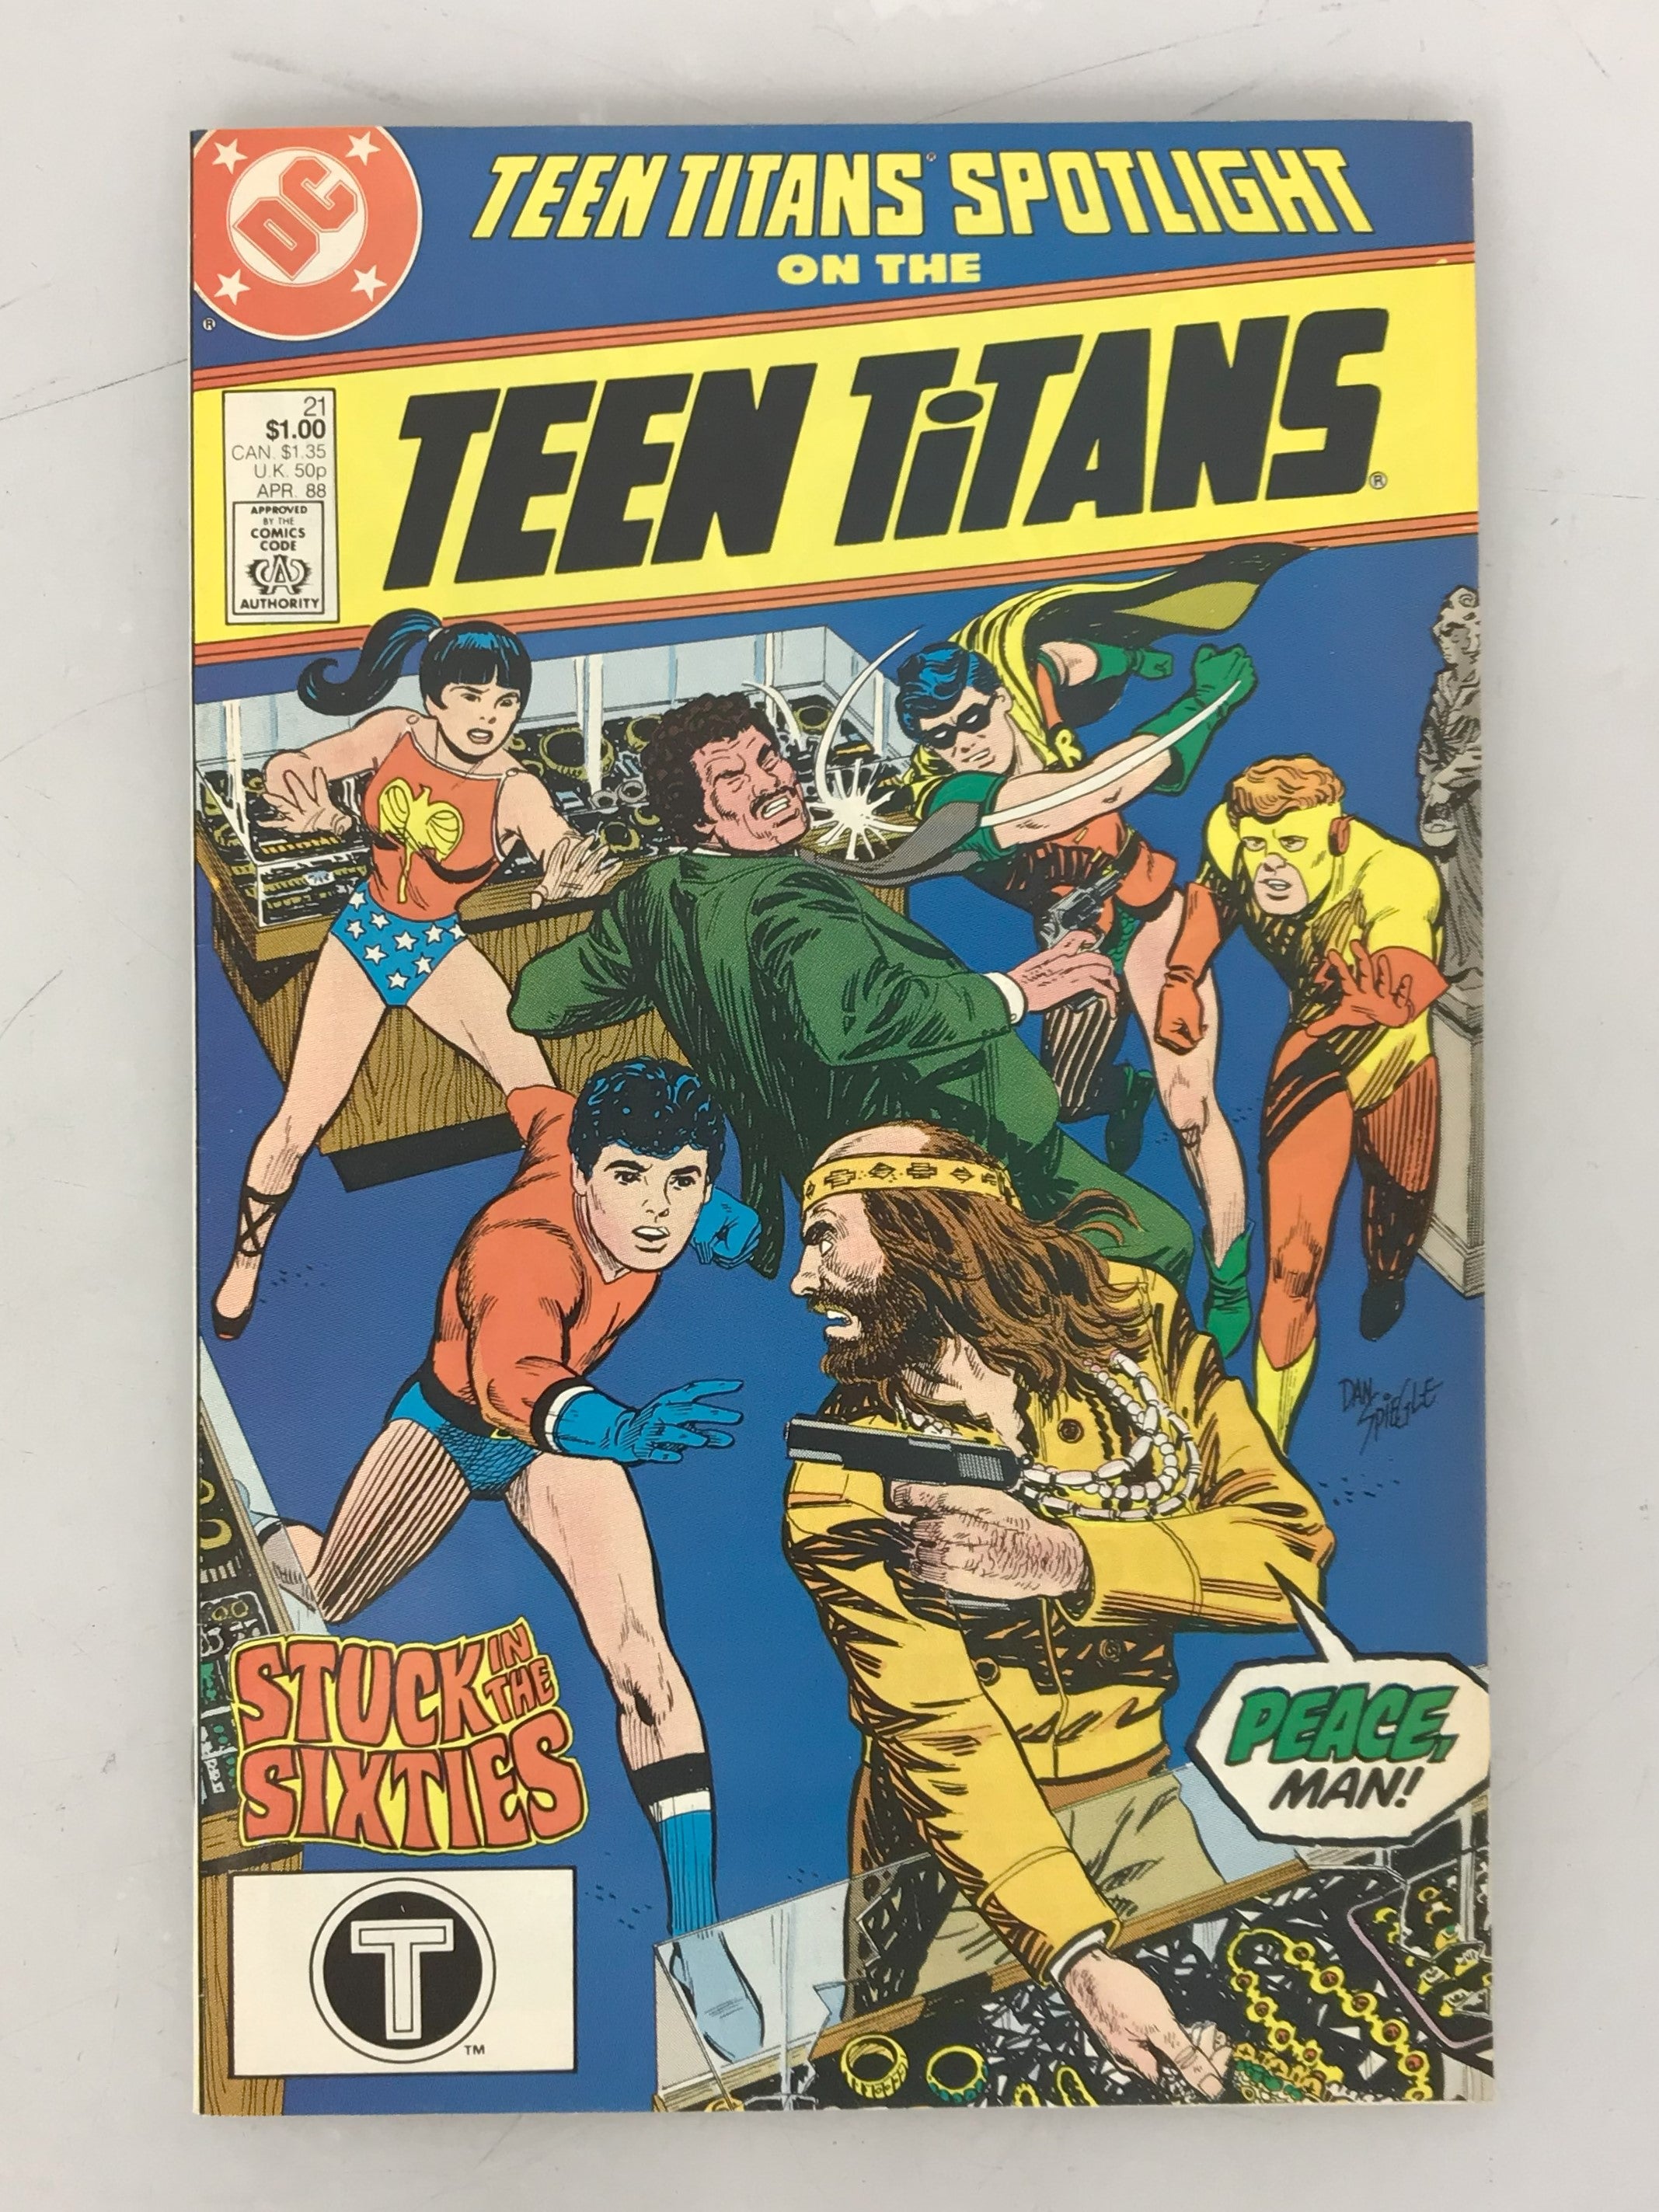 Teen Titans Spotlight 21 1981